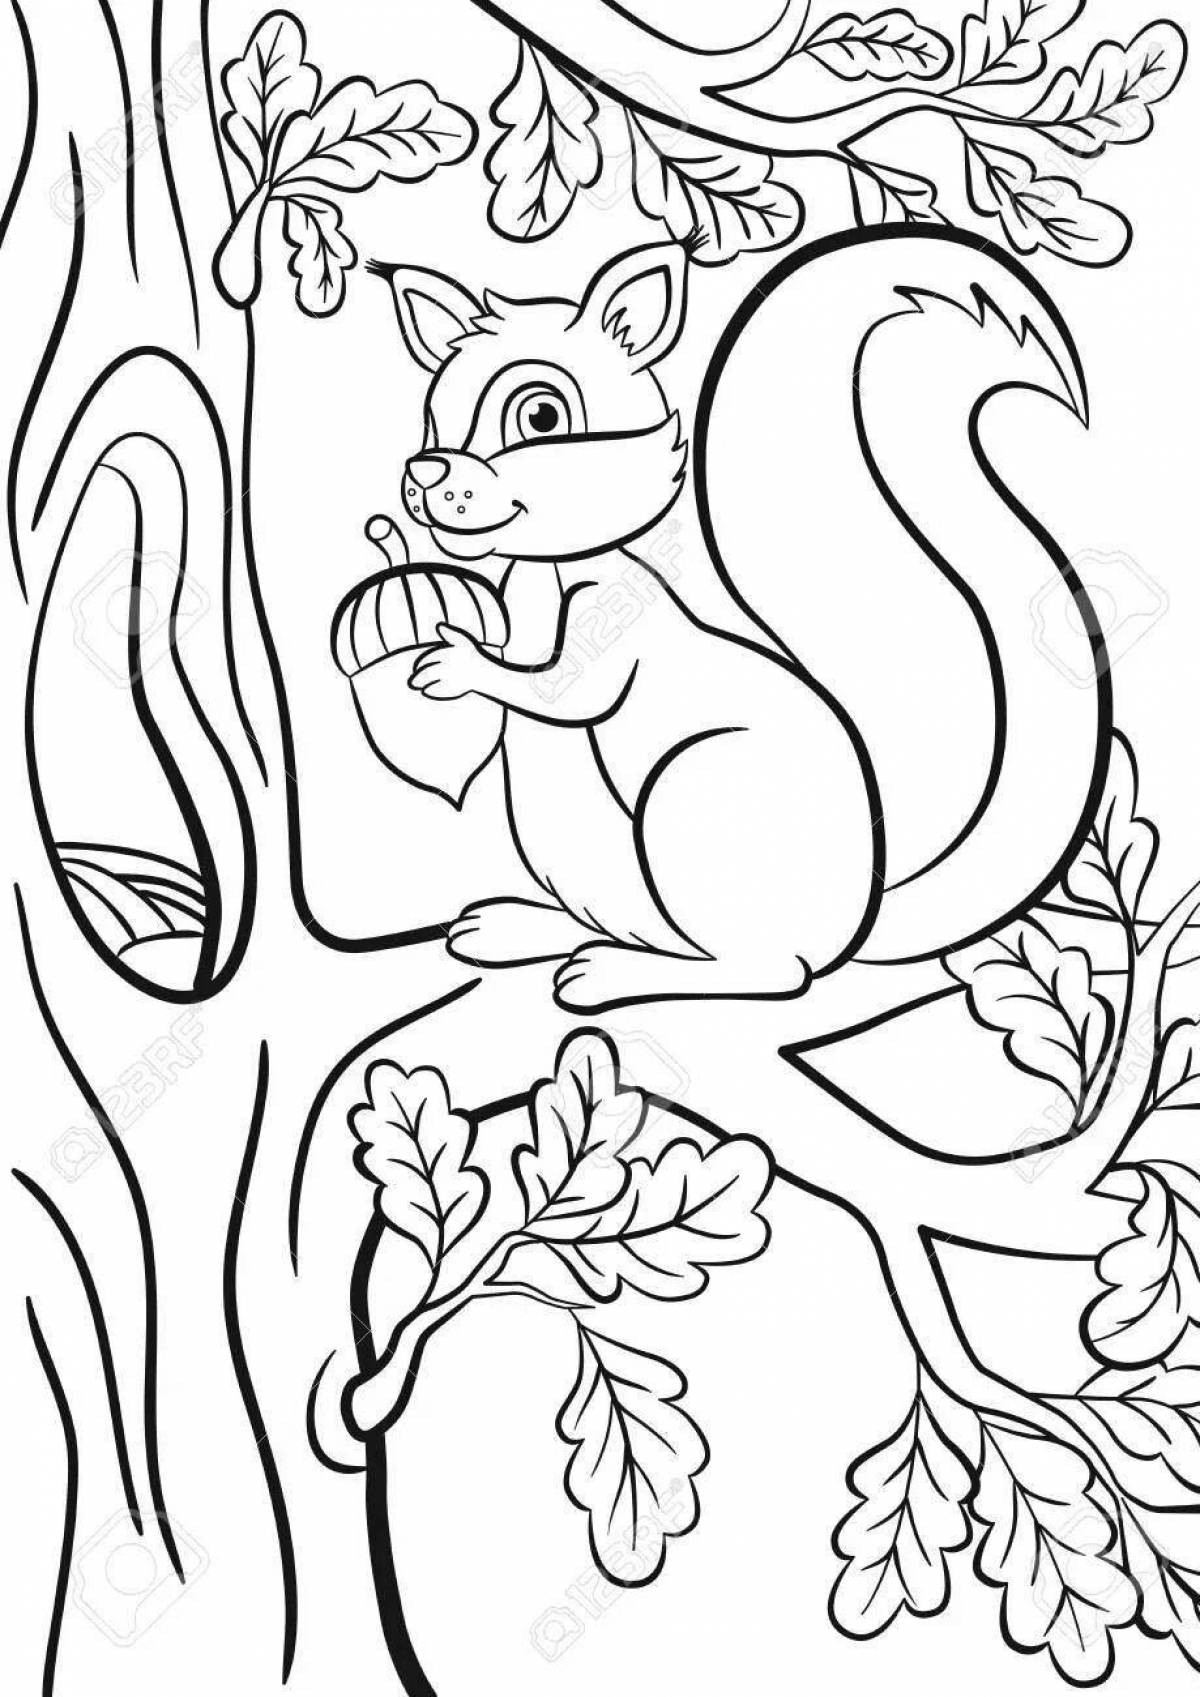 Coloring book busy squirrel